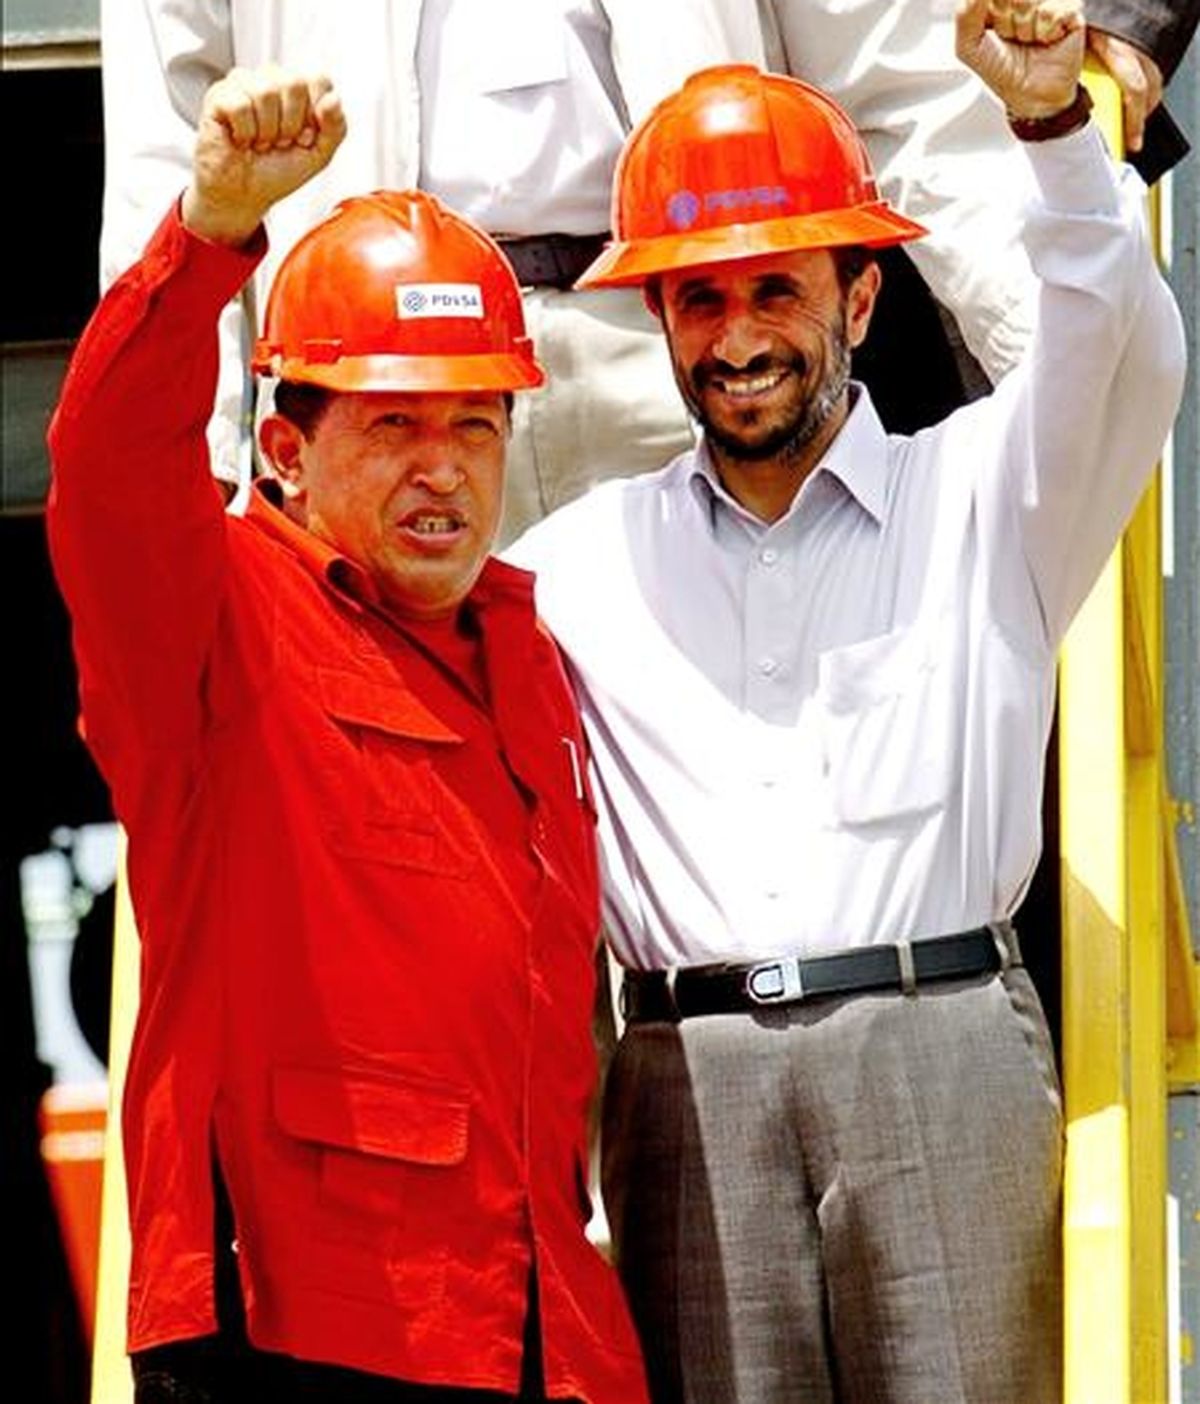 El presidente venezolano, Hugo Chávez, y su homólogo iraní, Mahmud Ahmadineyad, durante una visita a unas instalaciones petroleras en Venezuela en el año 2006. EFE/Archivo